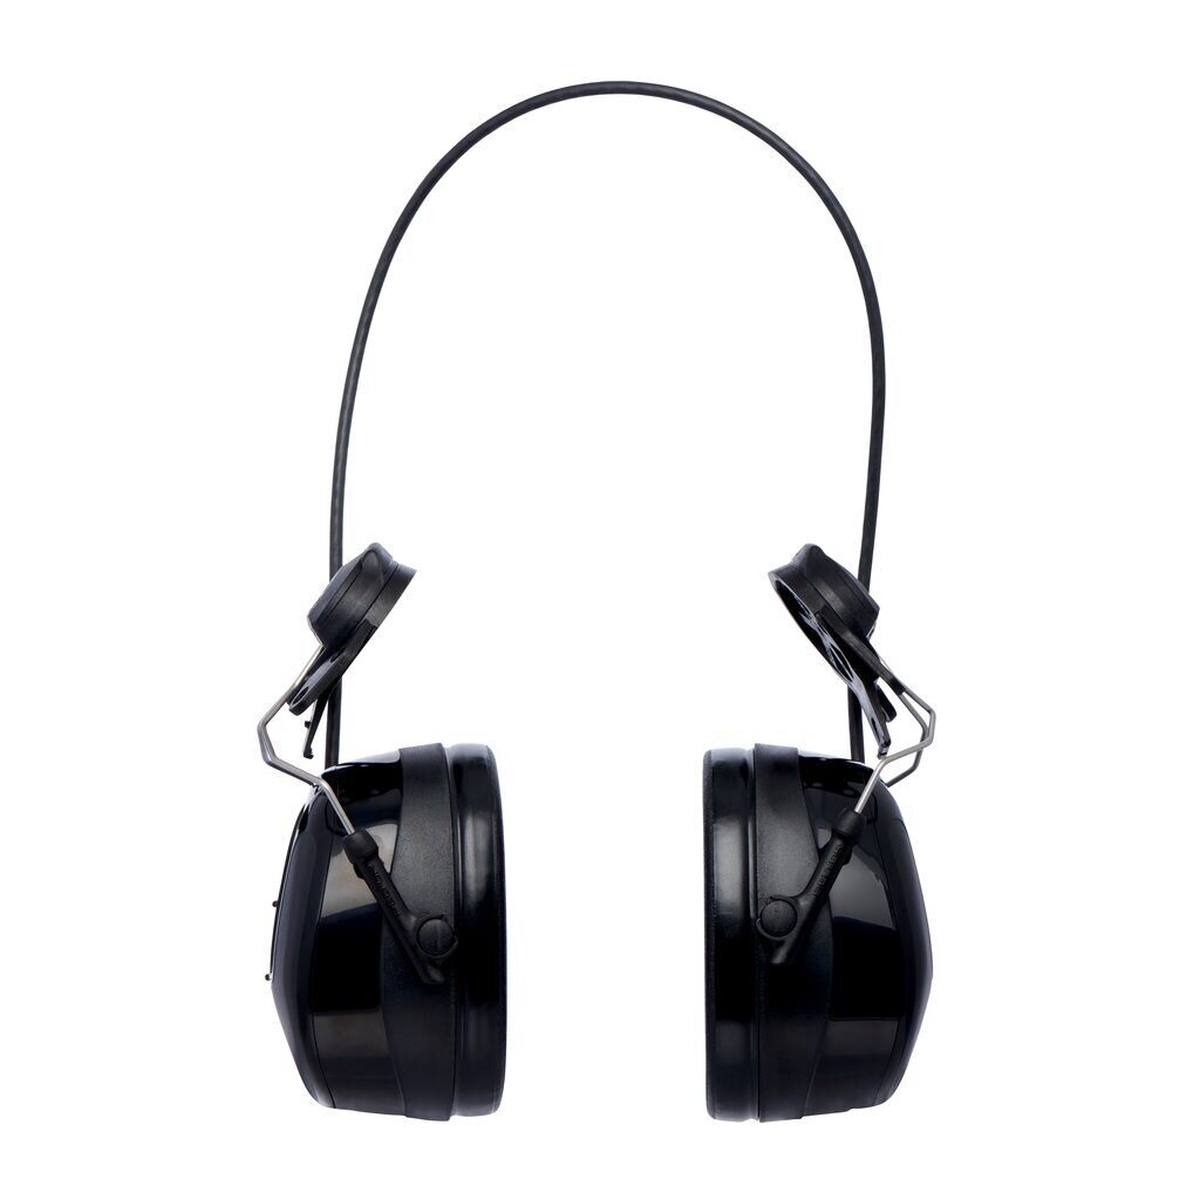 3M Peltor WorkTunes Pro FM Radio Gehörschutz Headset, Helmbefestigung, schwarz